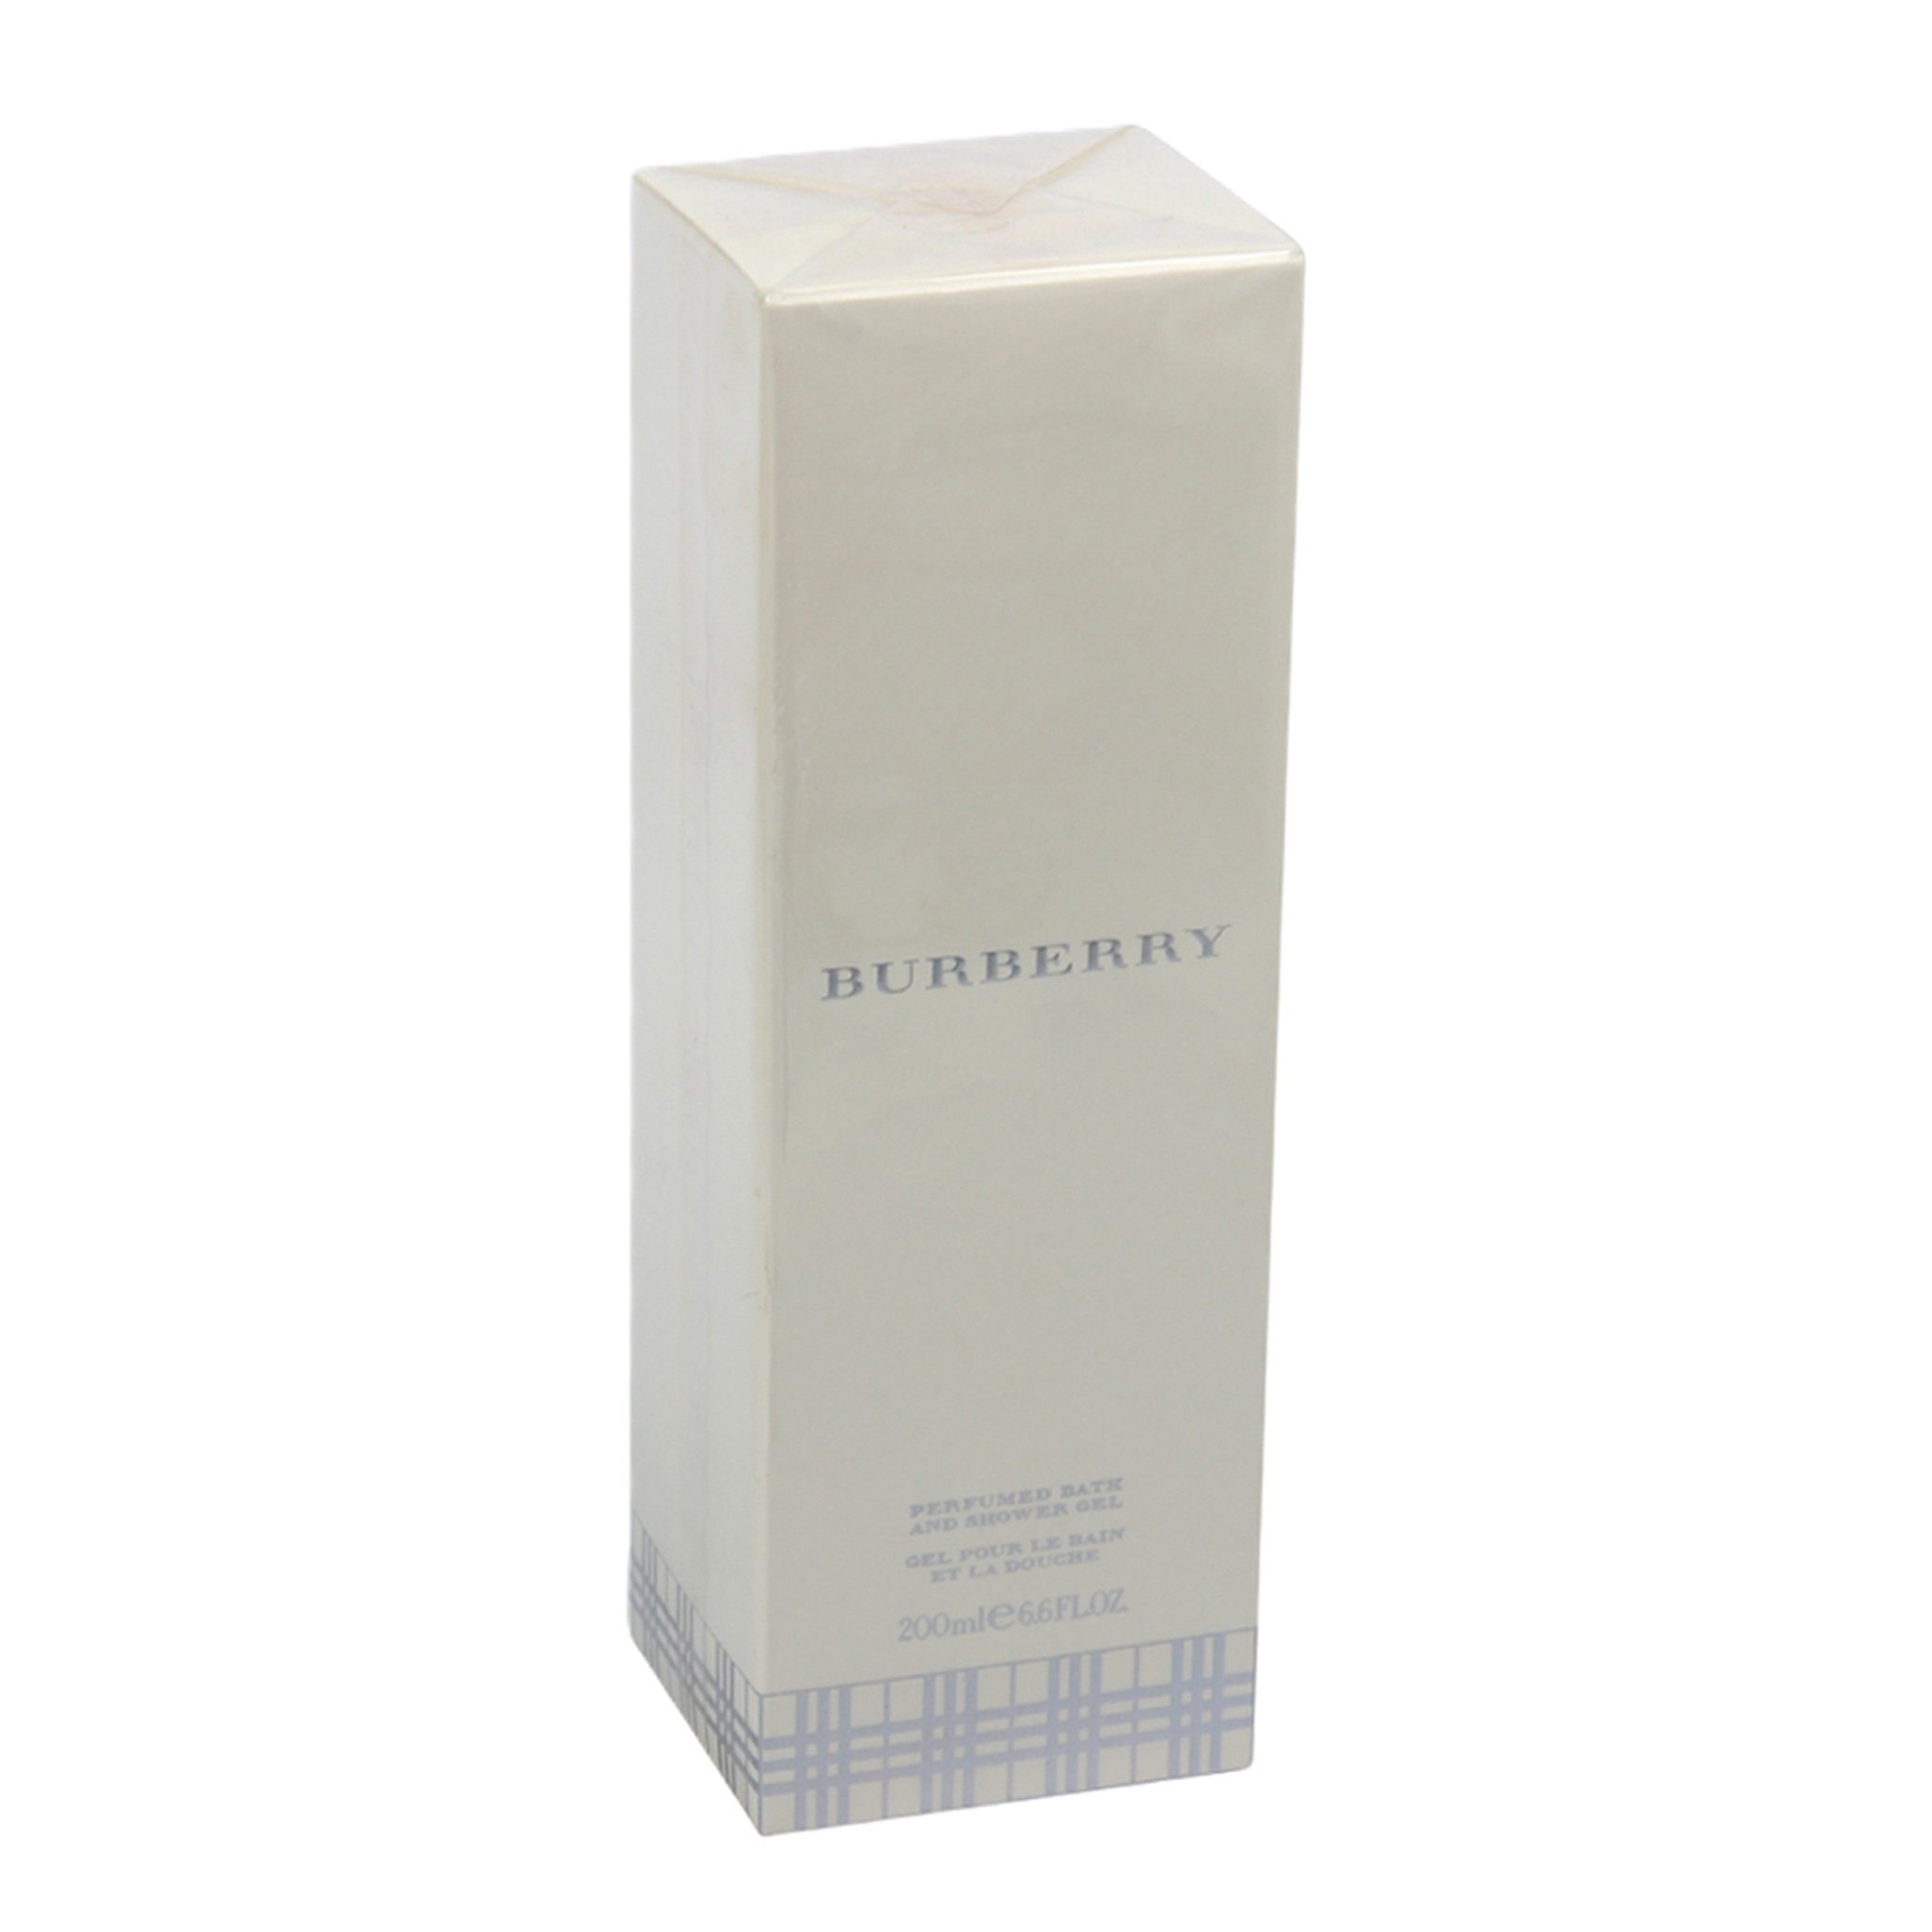 Burberry Perfumed Bath and Showergel Duschgel 200ml